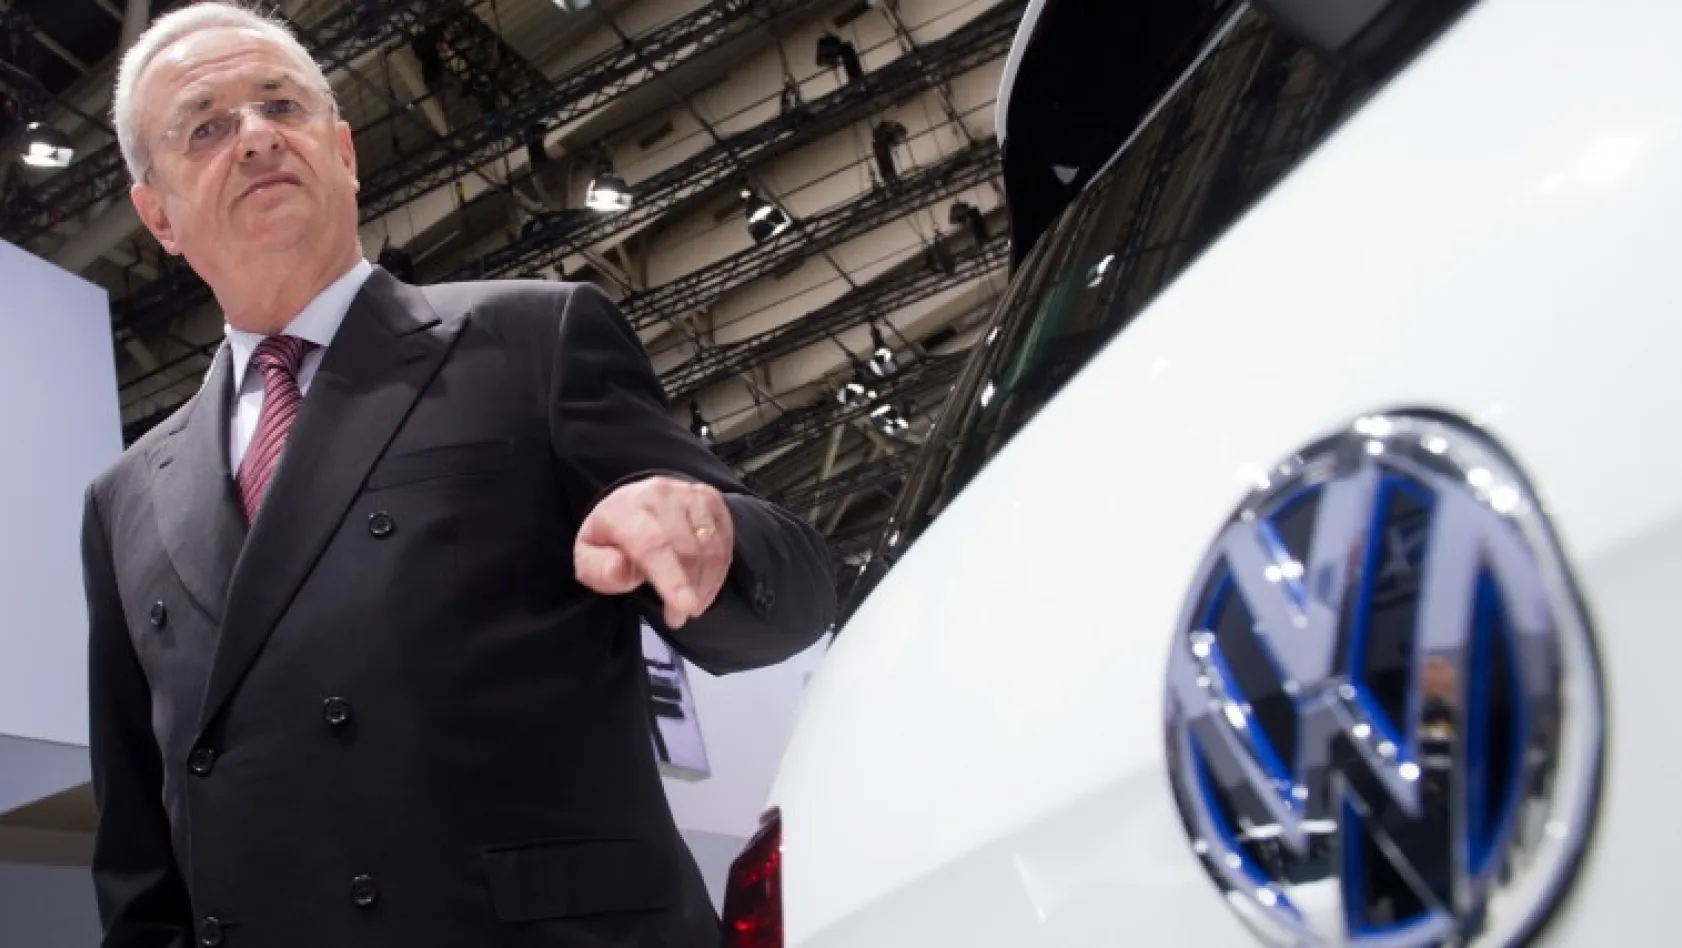 Volkswagen'in CEO'su istifa etti